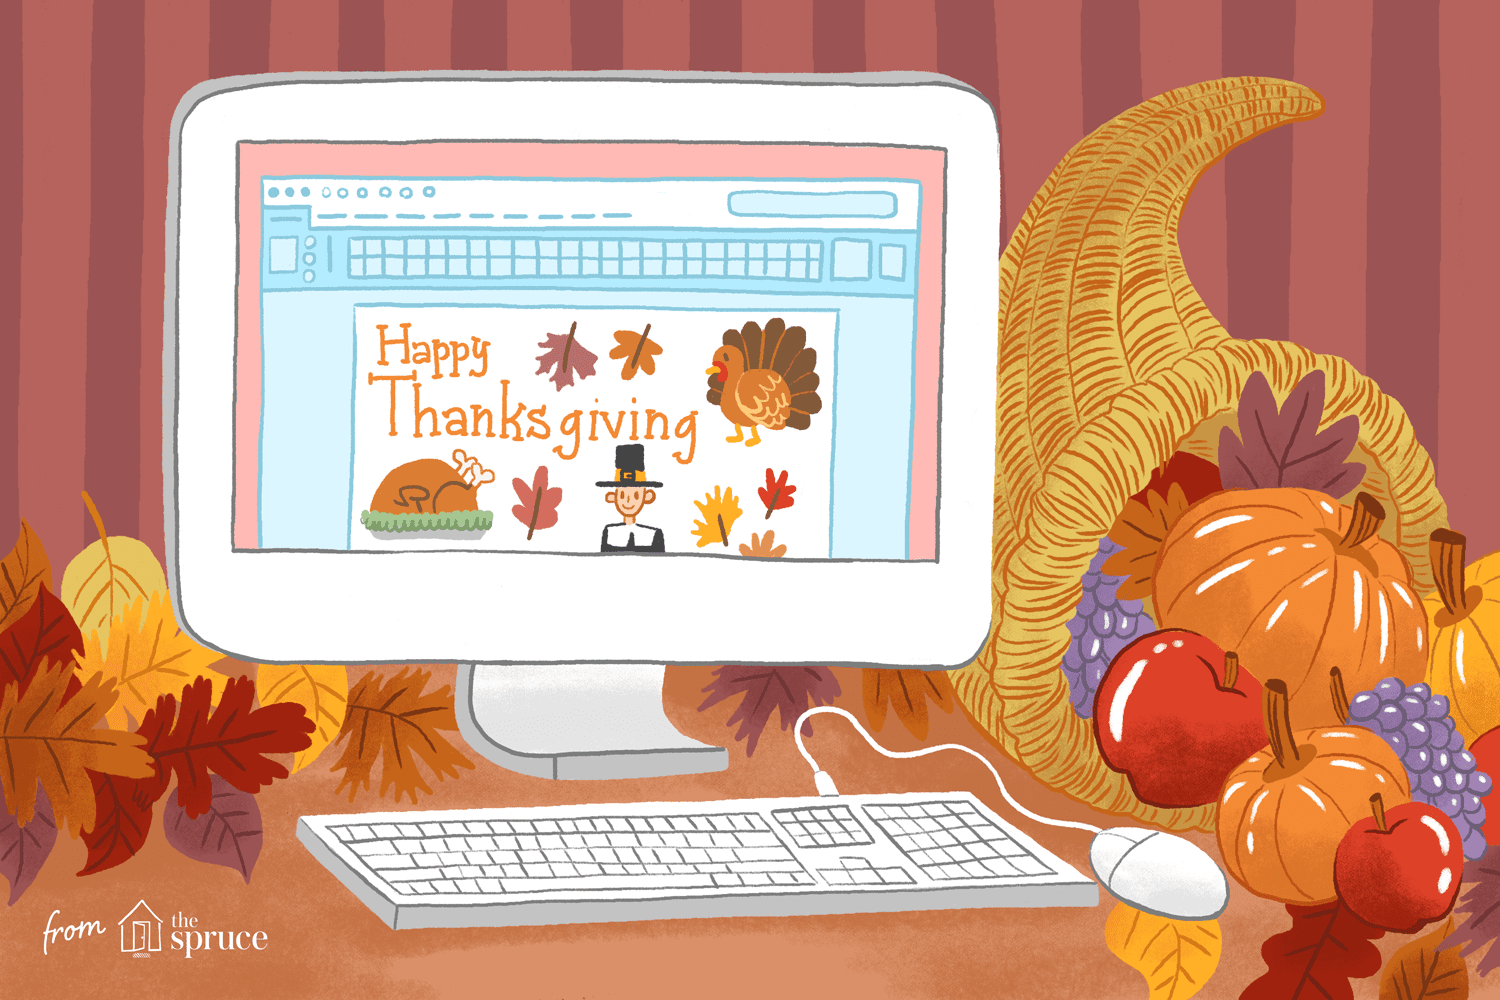 说明电脑屏幕上的“感恩节快乐”字和其他剪贴画在屏幕上。这是一个聚宝盆